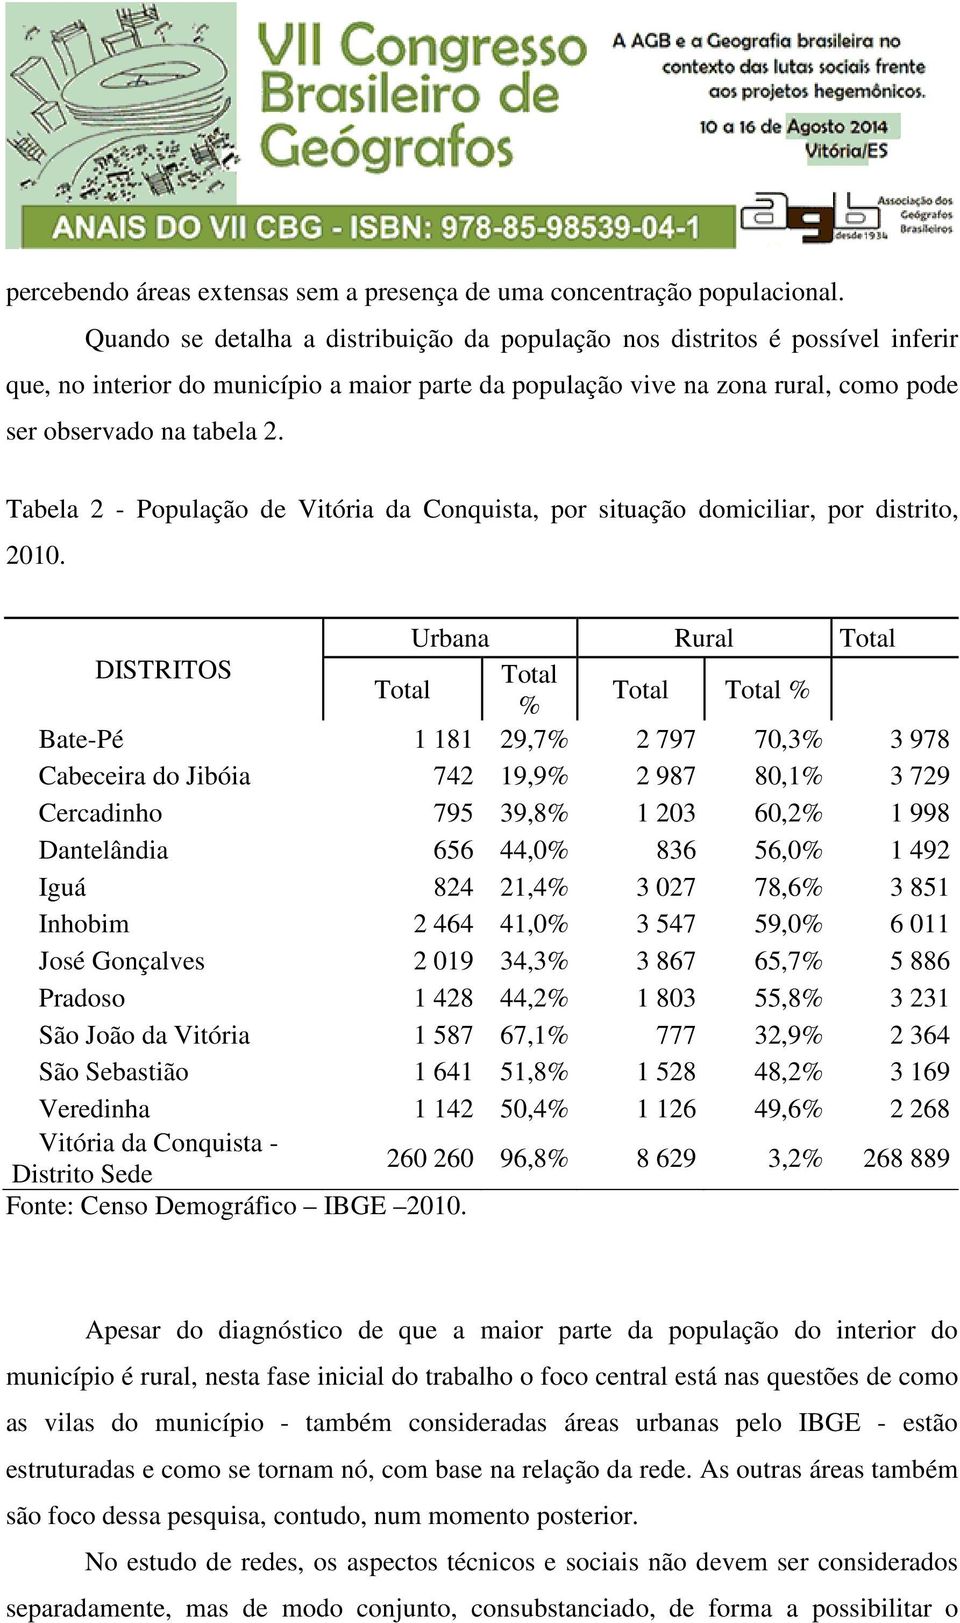 Tabela 2 - População de Vitória da Conquista, por situação domiciliar, por distrito, 2010.